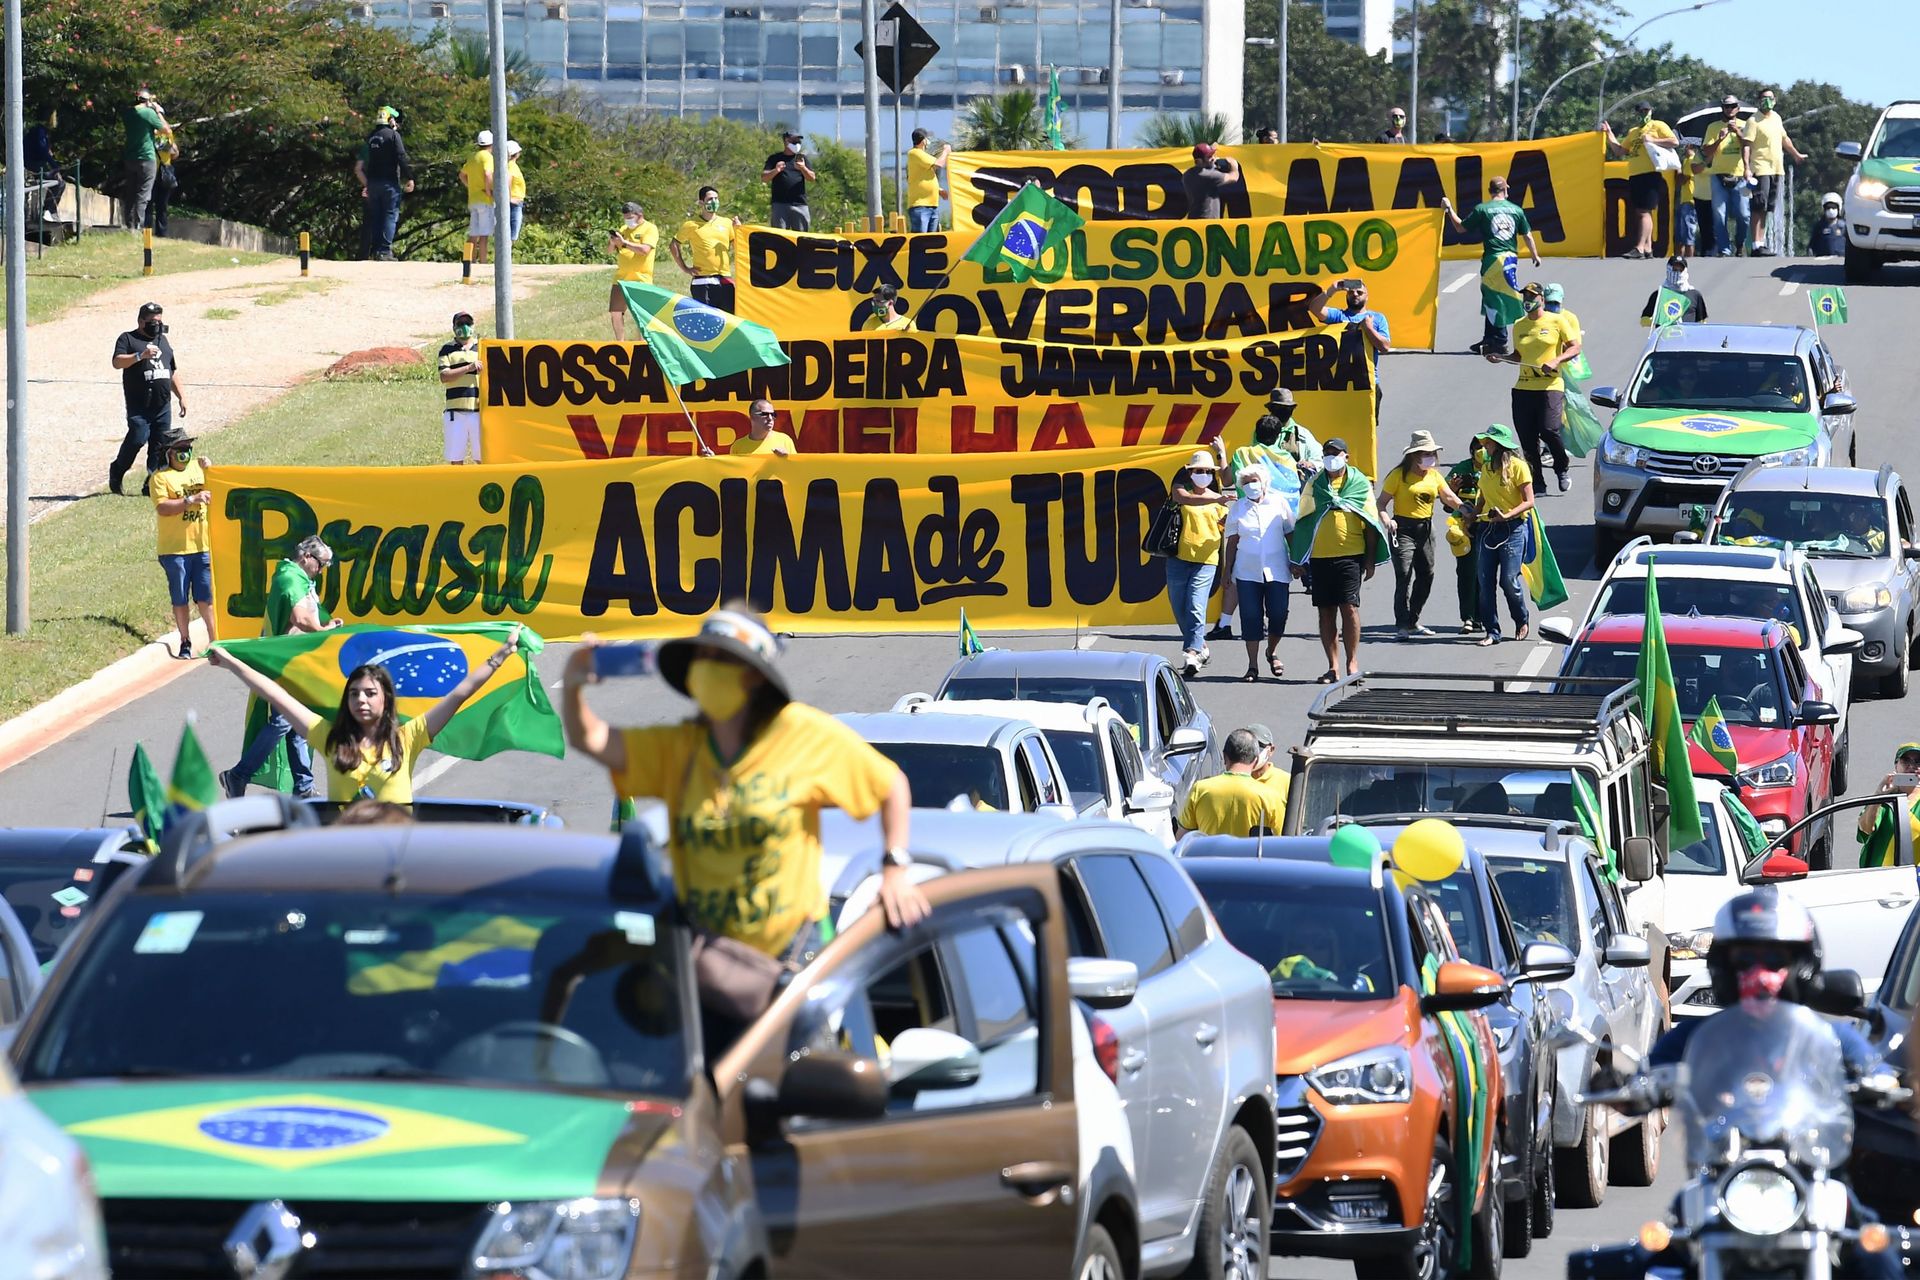 Les partisans du président brésilien Jair Bolsonaro participent à une manifestation pour montrer leur soutien à leur chef, à Brasilia, le 3 mai 2020 lors de la nouvelle pandémie de coronavirus COVID-19.